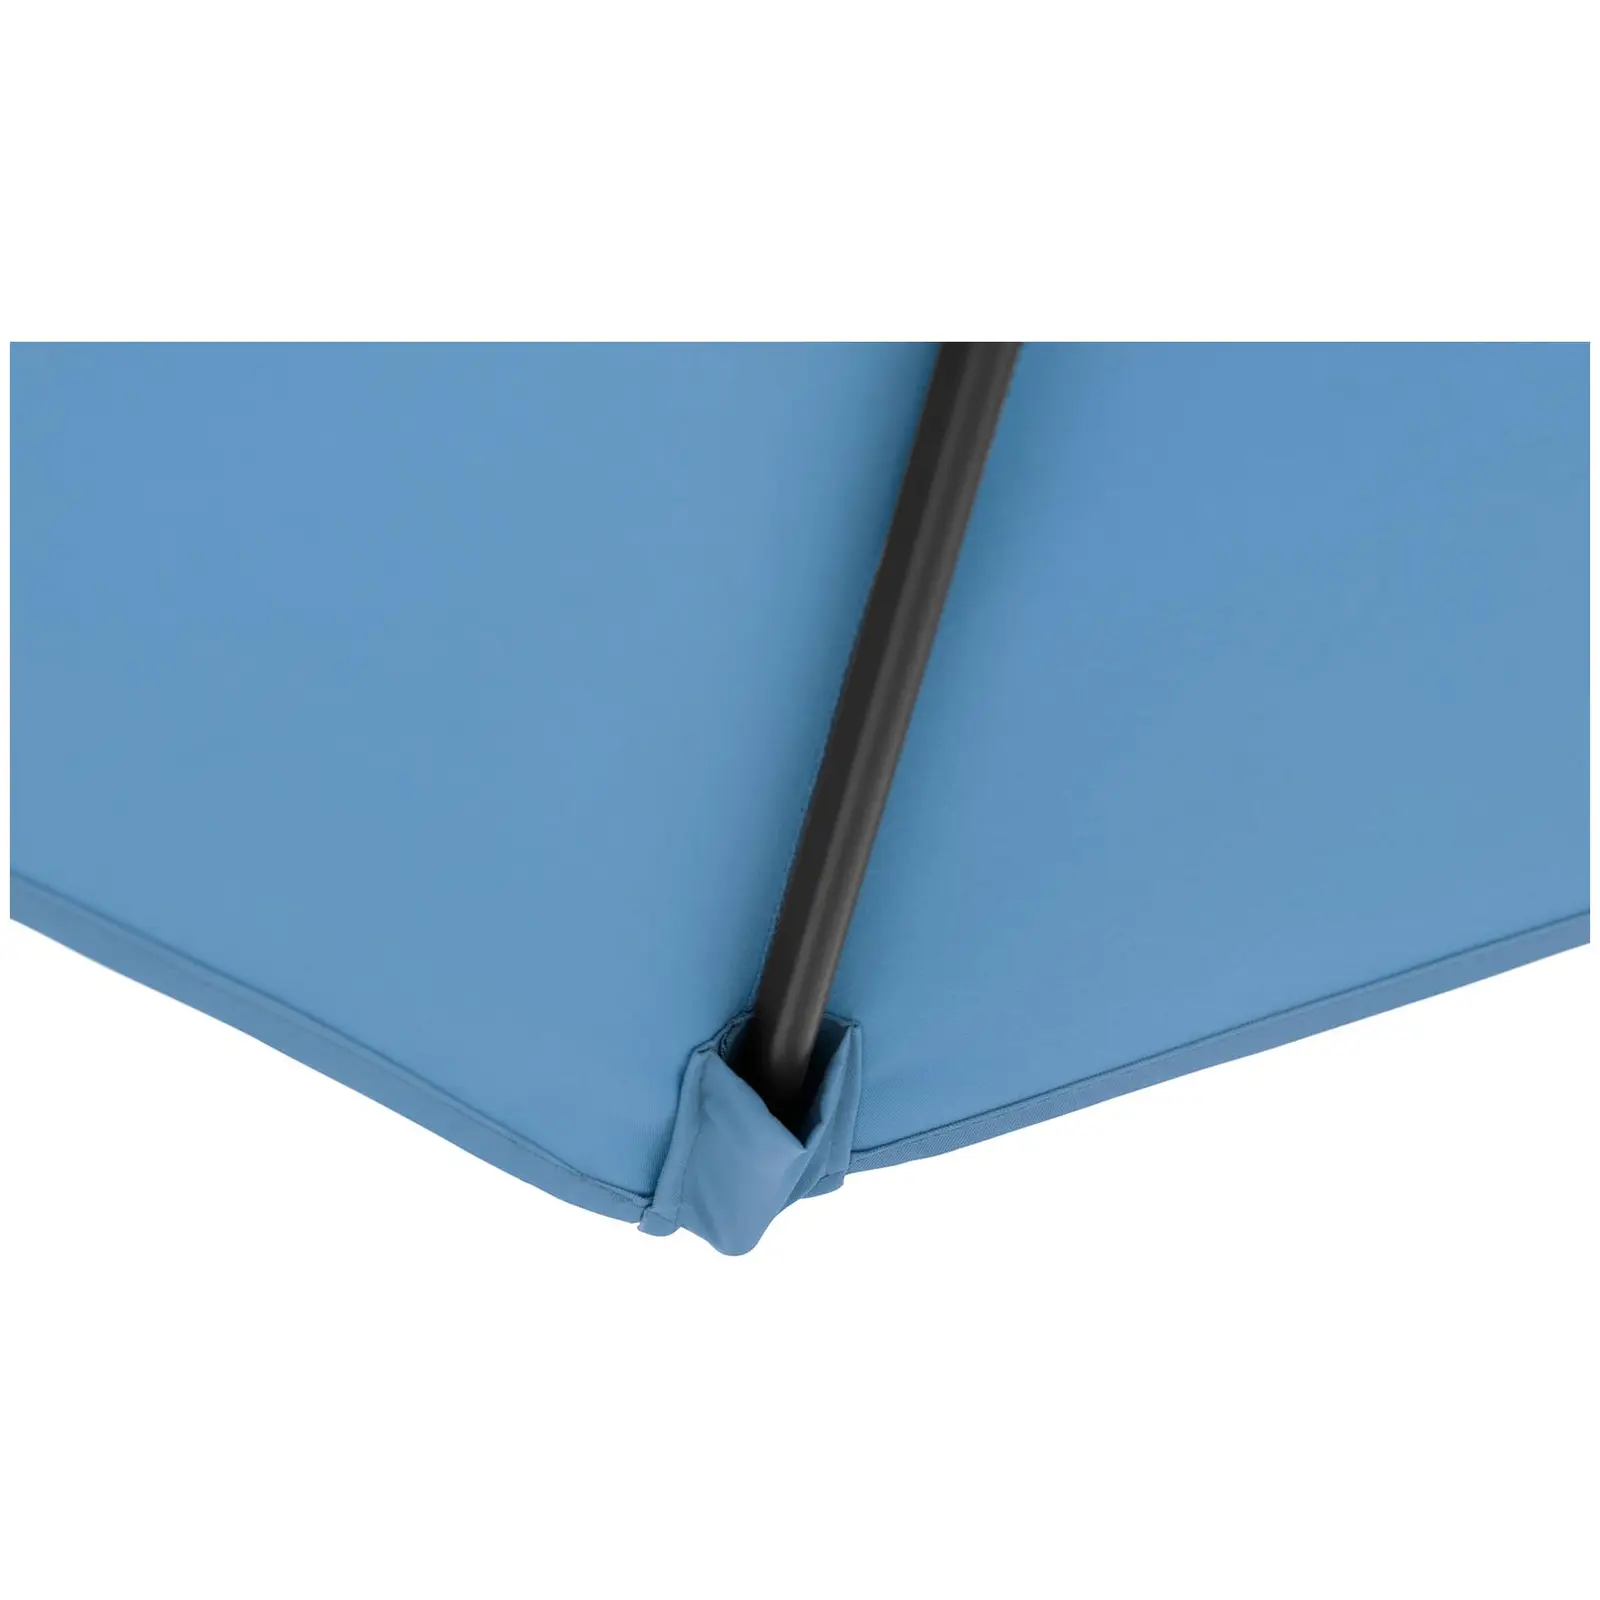 B-zboží Boční slunečník - modrý - čtvercový - 250 x 250 cm - s náklonem